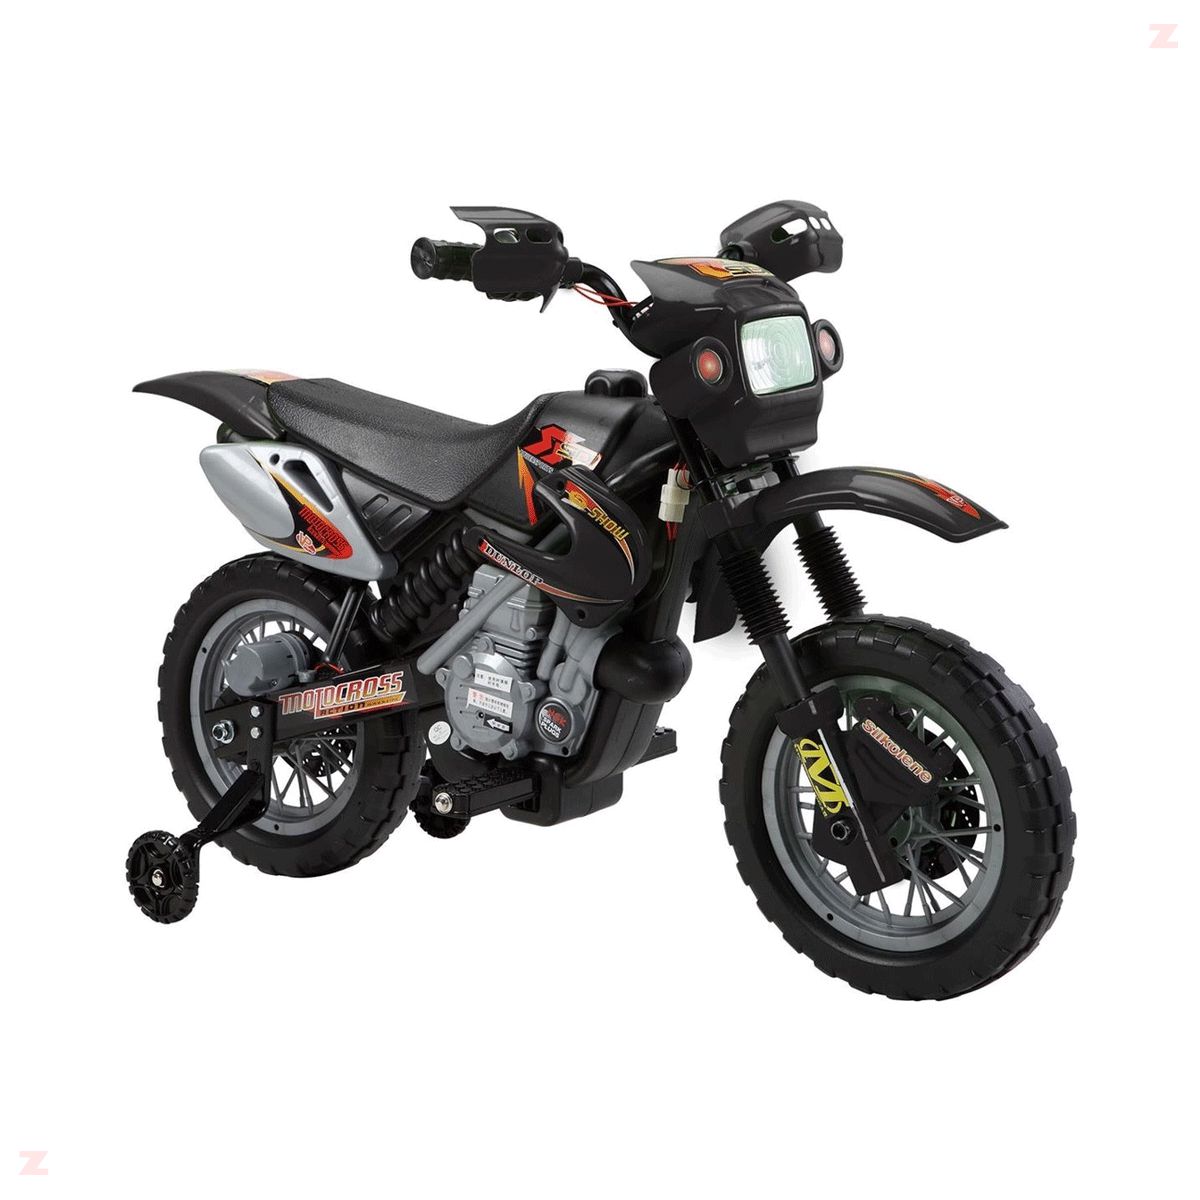 Especial - Introdução das crianças no motociclismo off road - MotoX